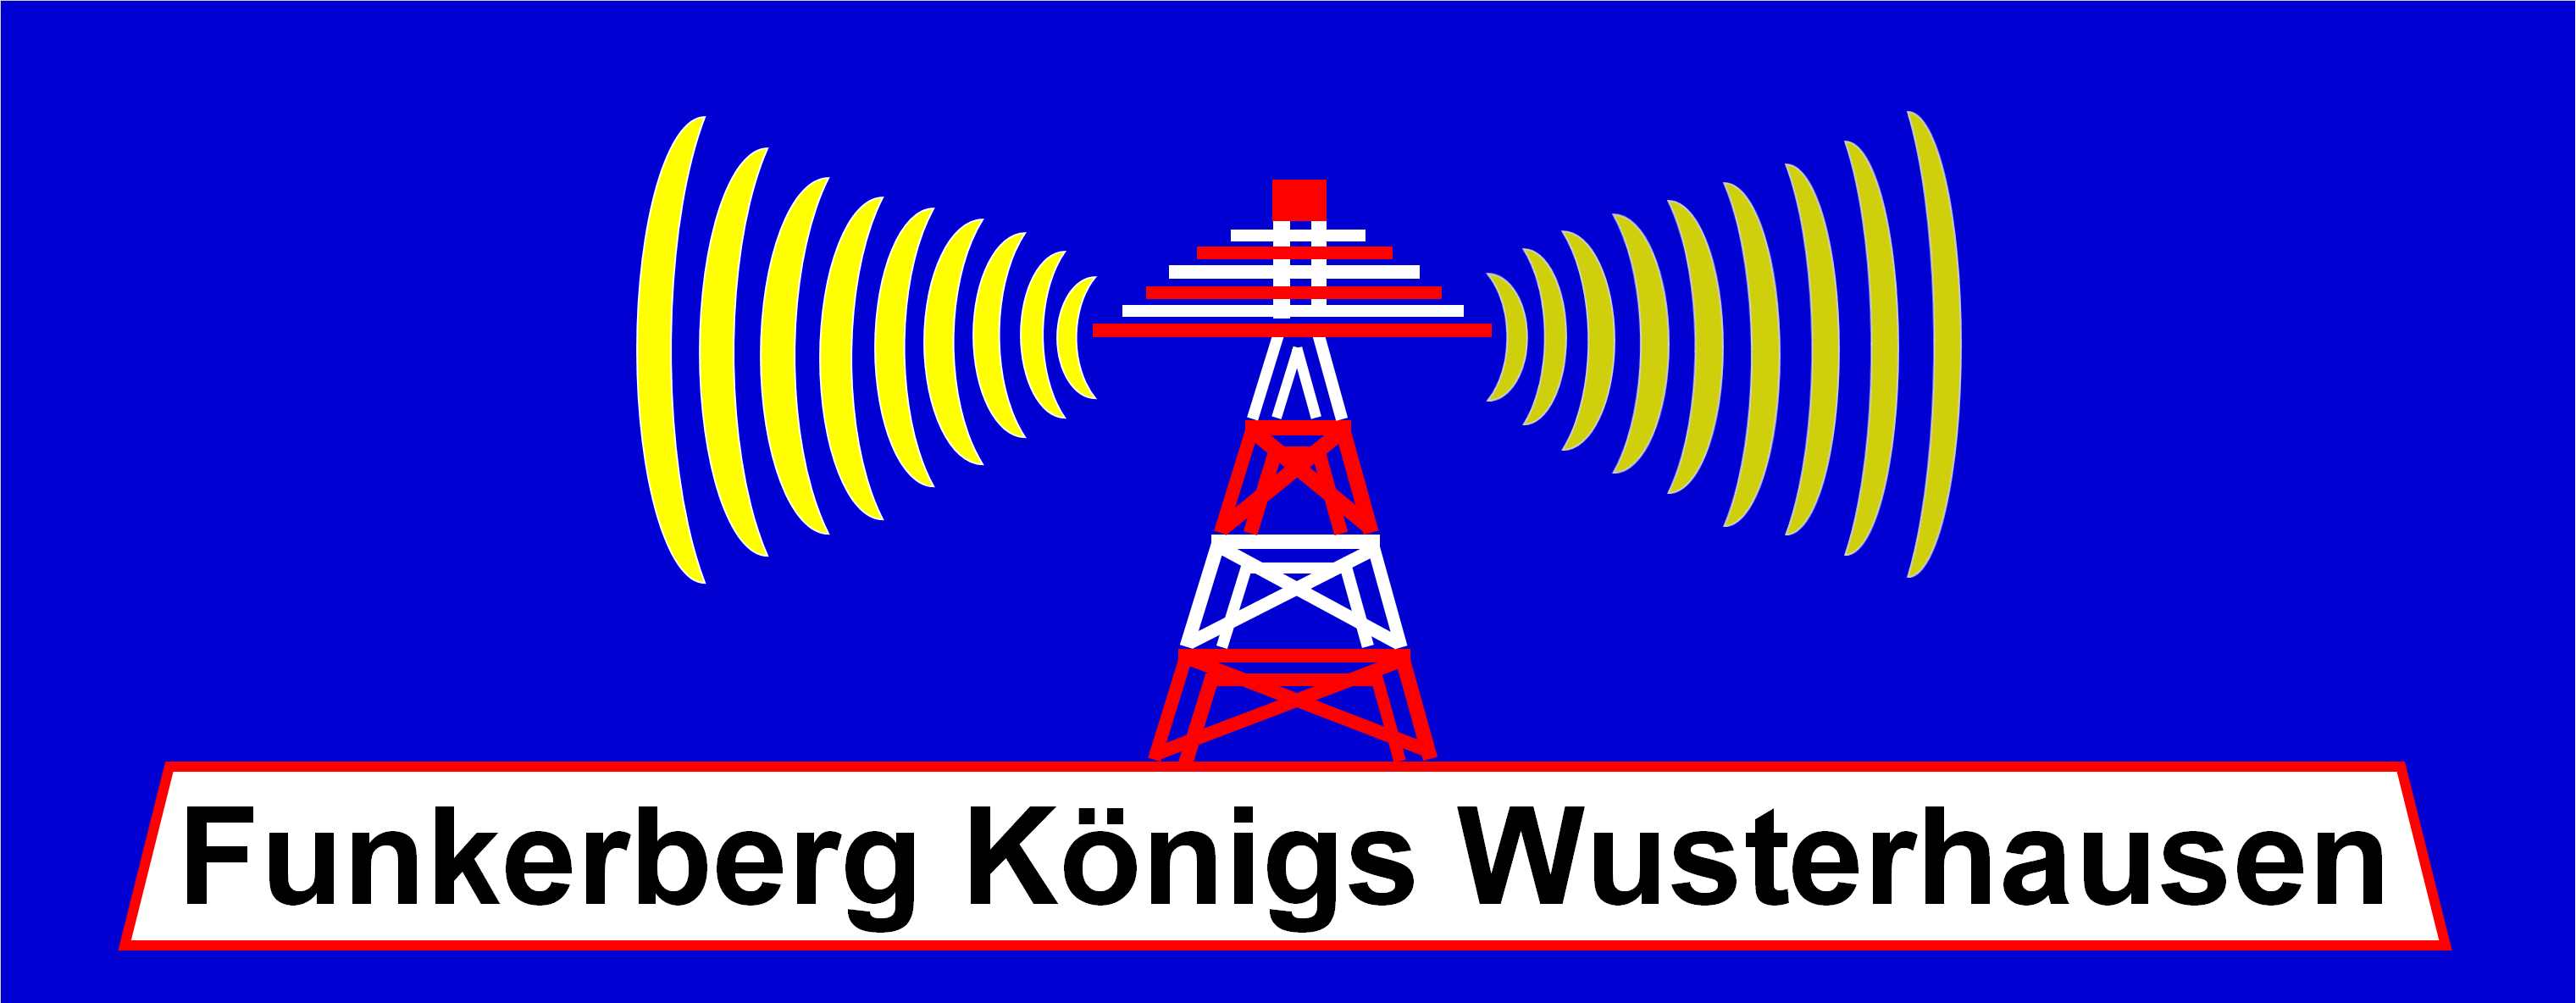 Funkerberg Königs Wusterhausen